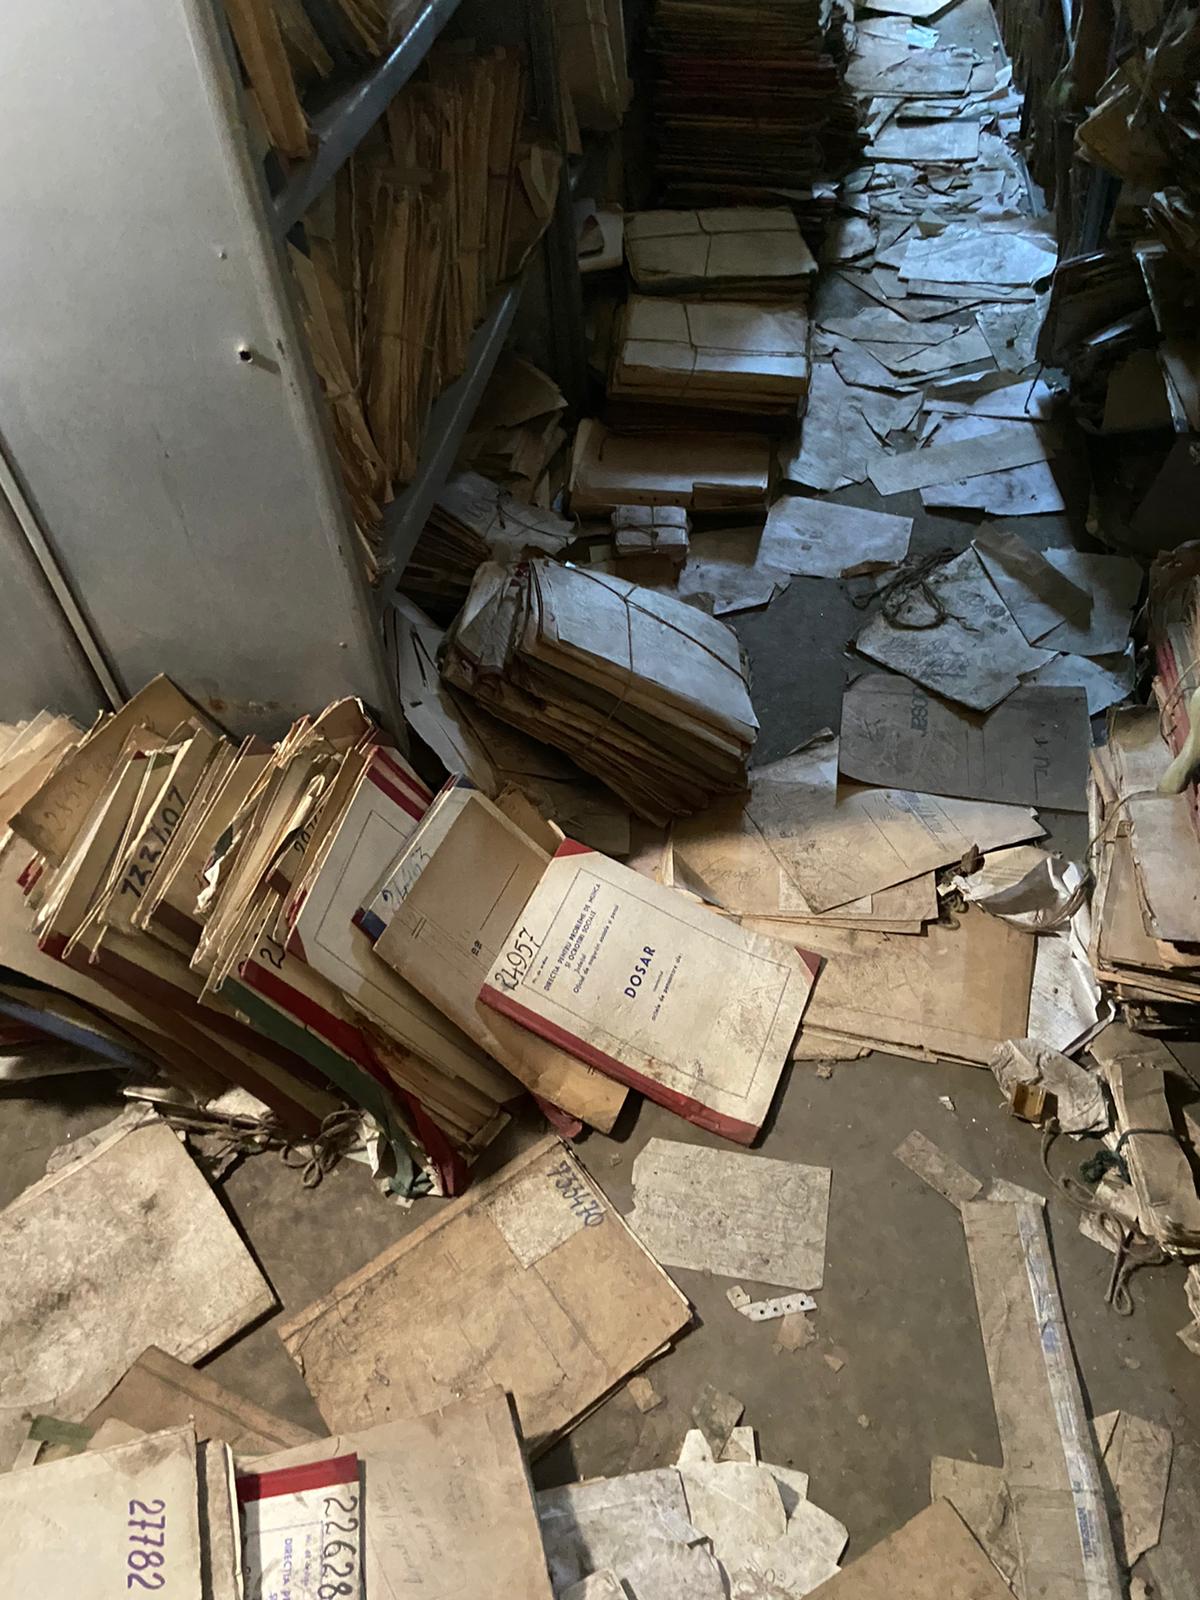 Dezastrul găsit într-o arhivă a Casei de Pensii Bucureşti. Dosarele sunt ținute în condiții mizere - Imaginea 2